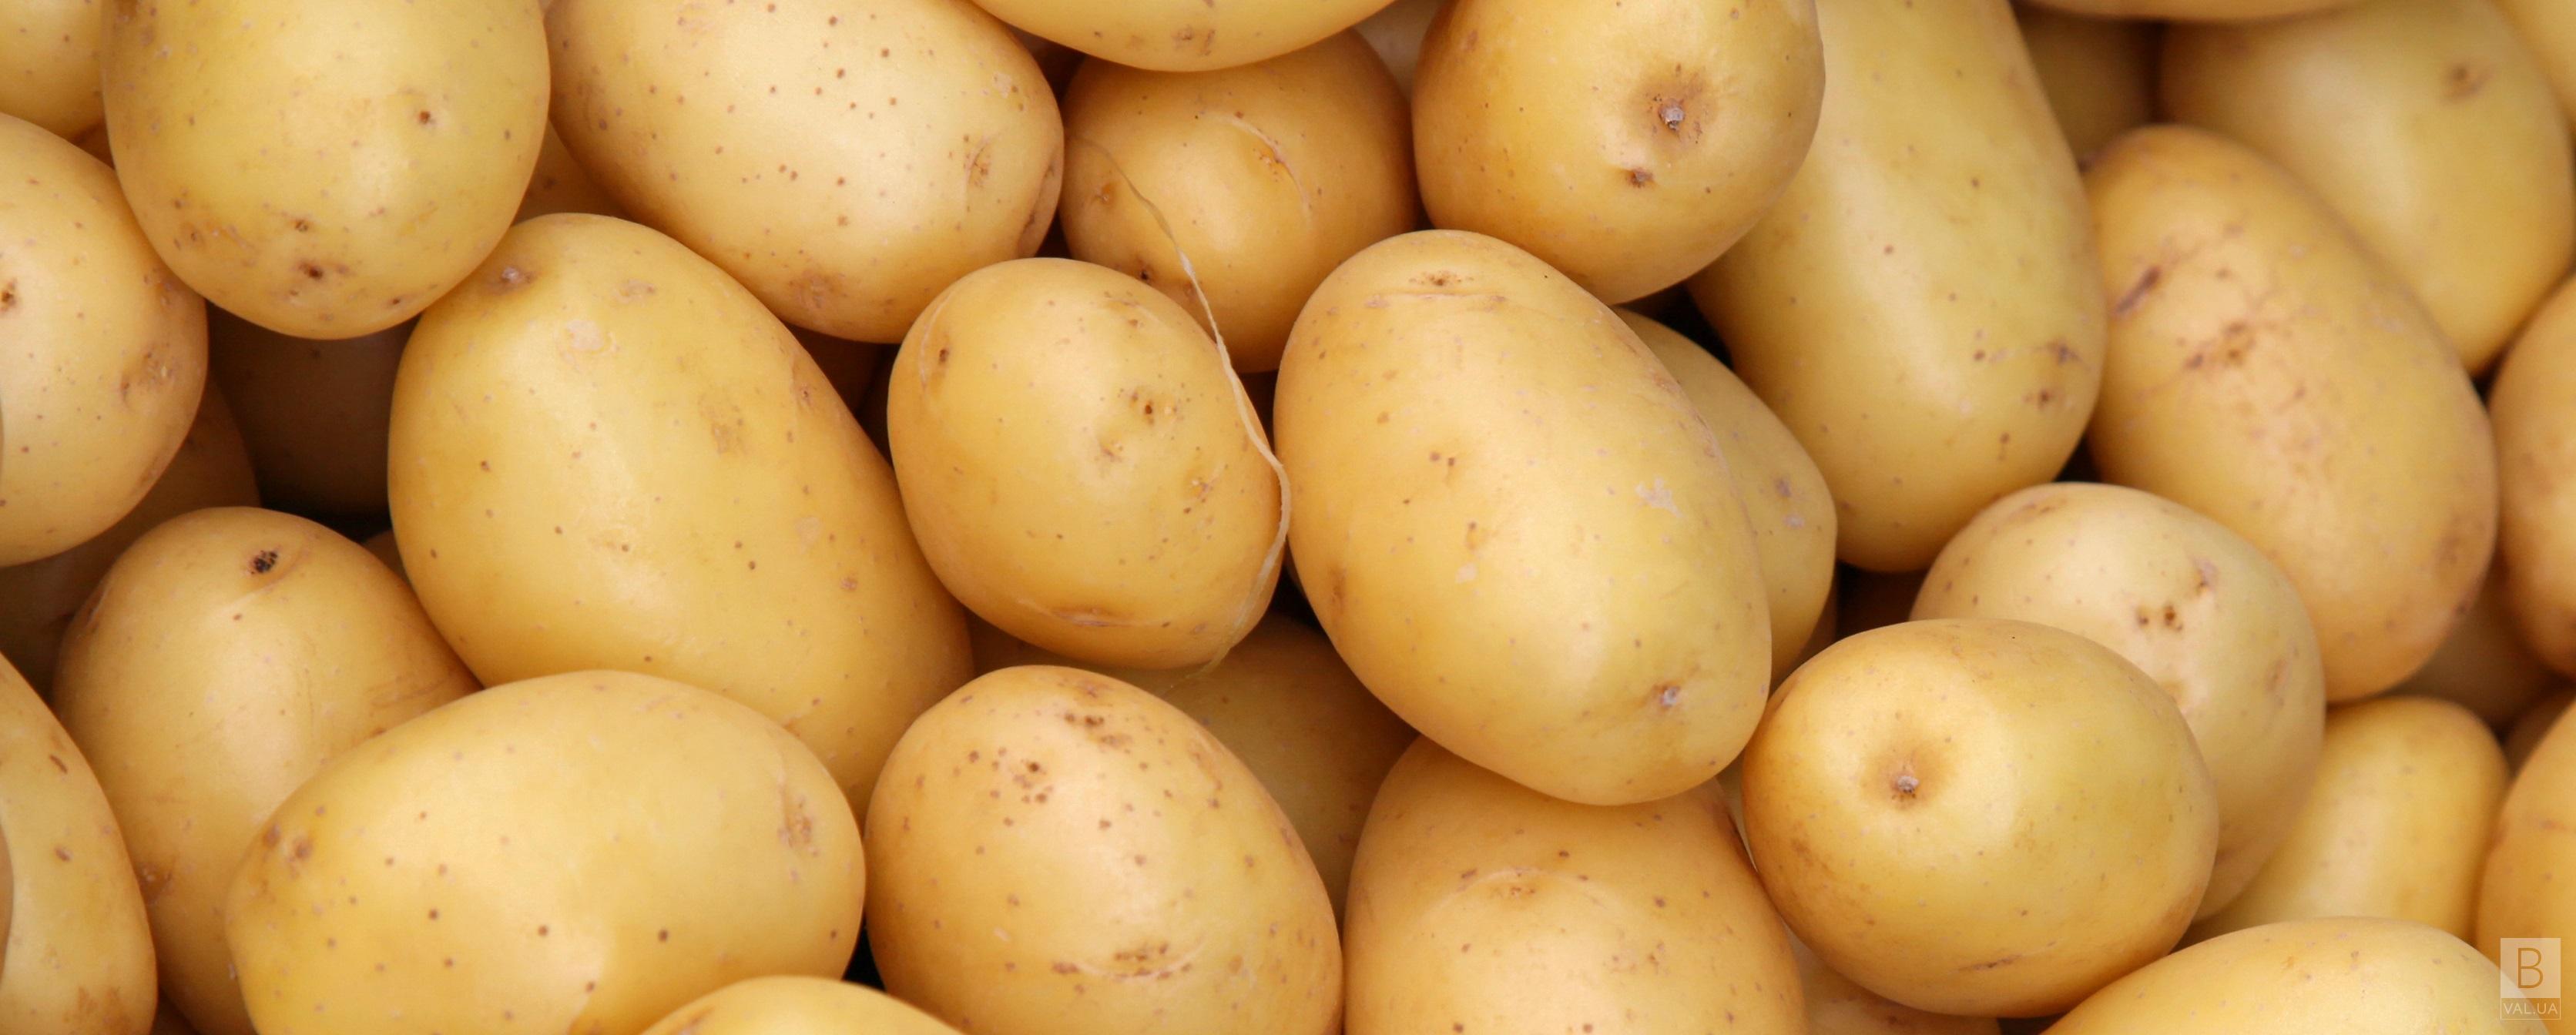 Картоплю в садки Чернігова управління купило майже по 10 гривень за кілограм  